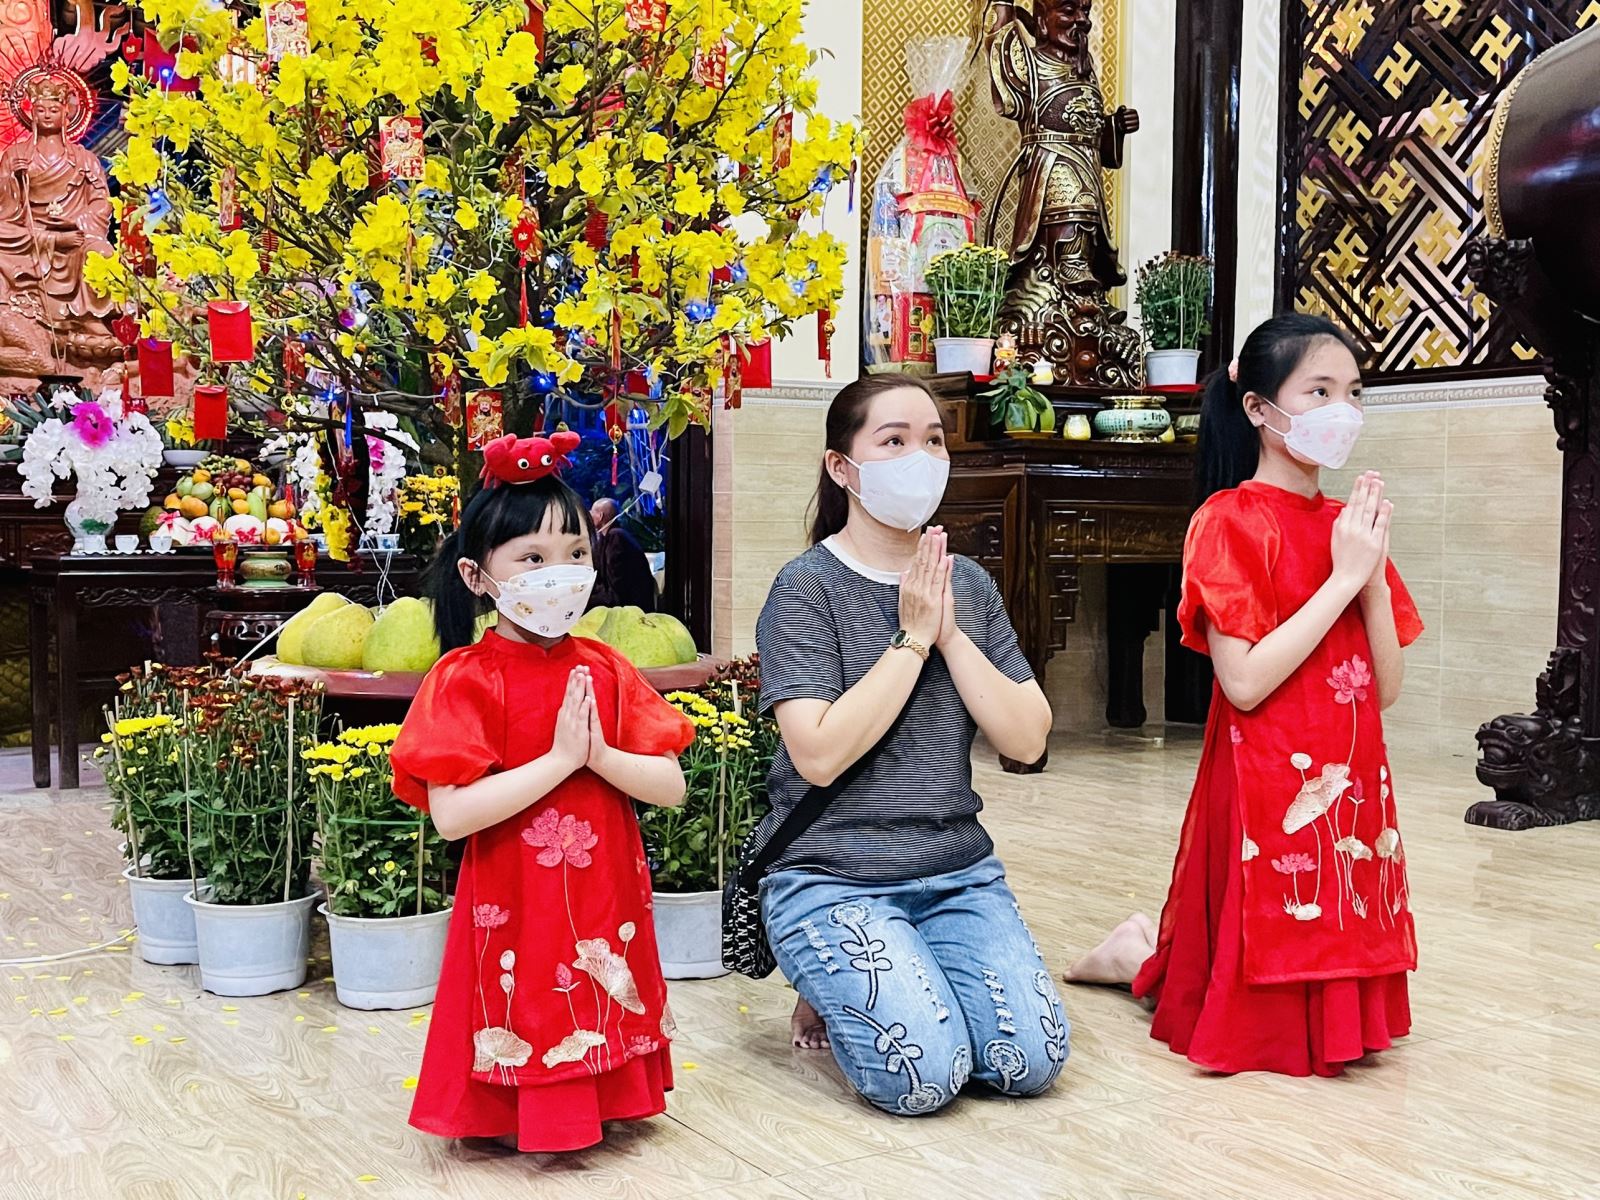 Lễ chùa: Lễ chùa luôn là một trong những nét đẹp truyền thống của Việt Nam vào dịp Tết. Nếu bạn muốn tìm hiểu thêm về nghi lễ và phong tục tại các đền chùa trong ngày Tết thì đừng bỏ qua hình ảnh này nhé!